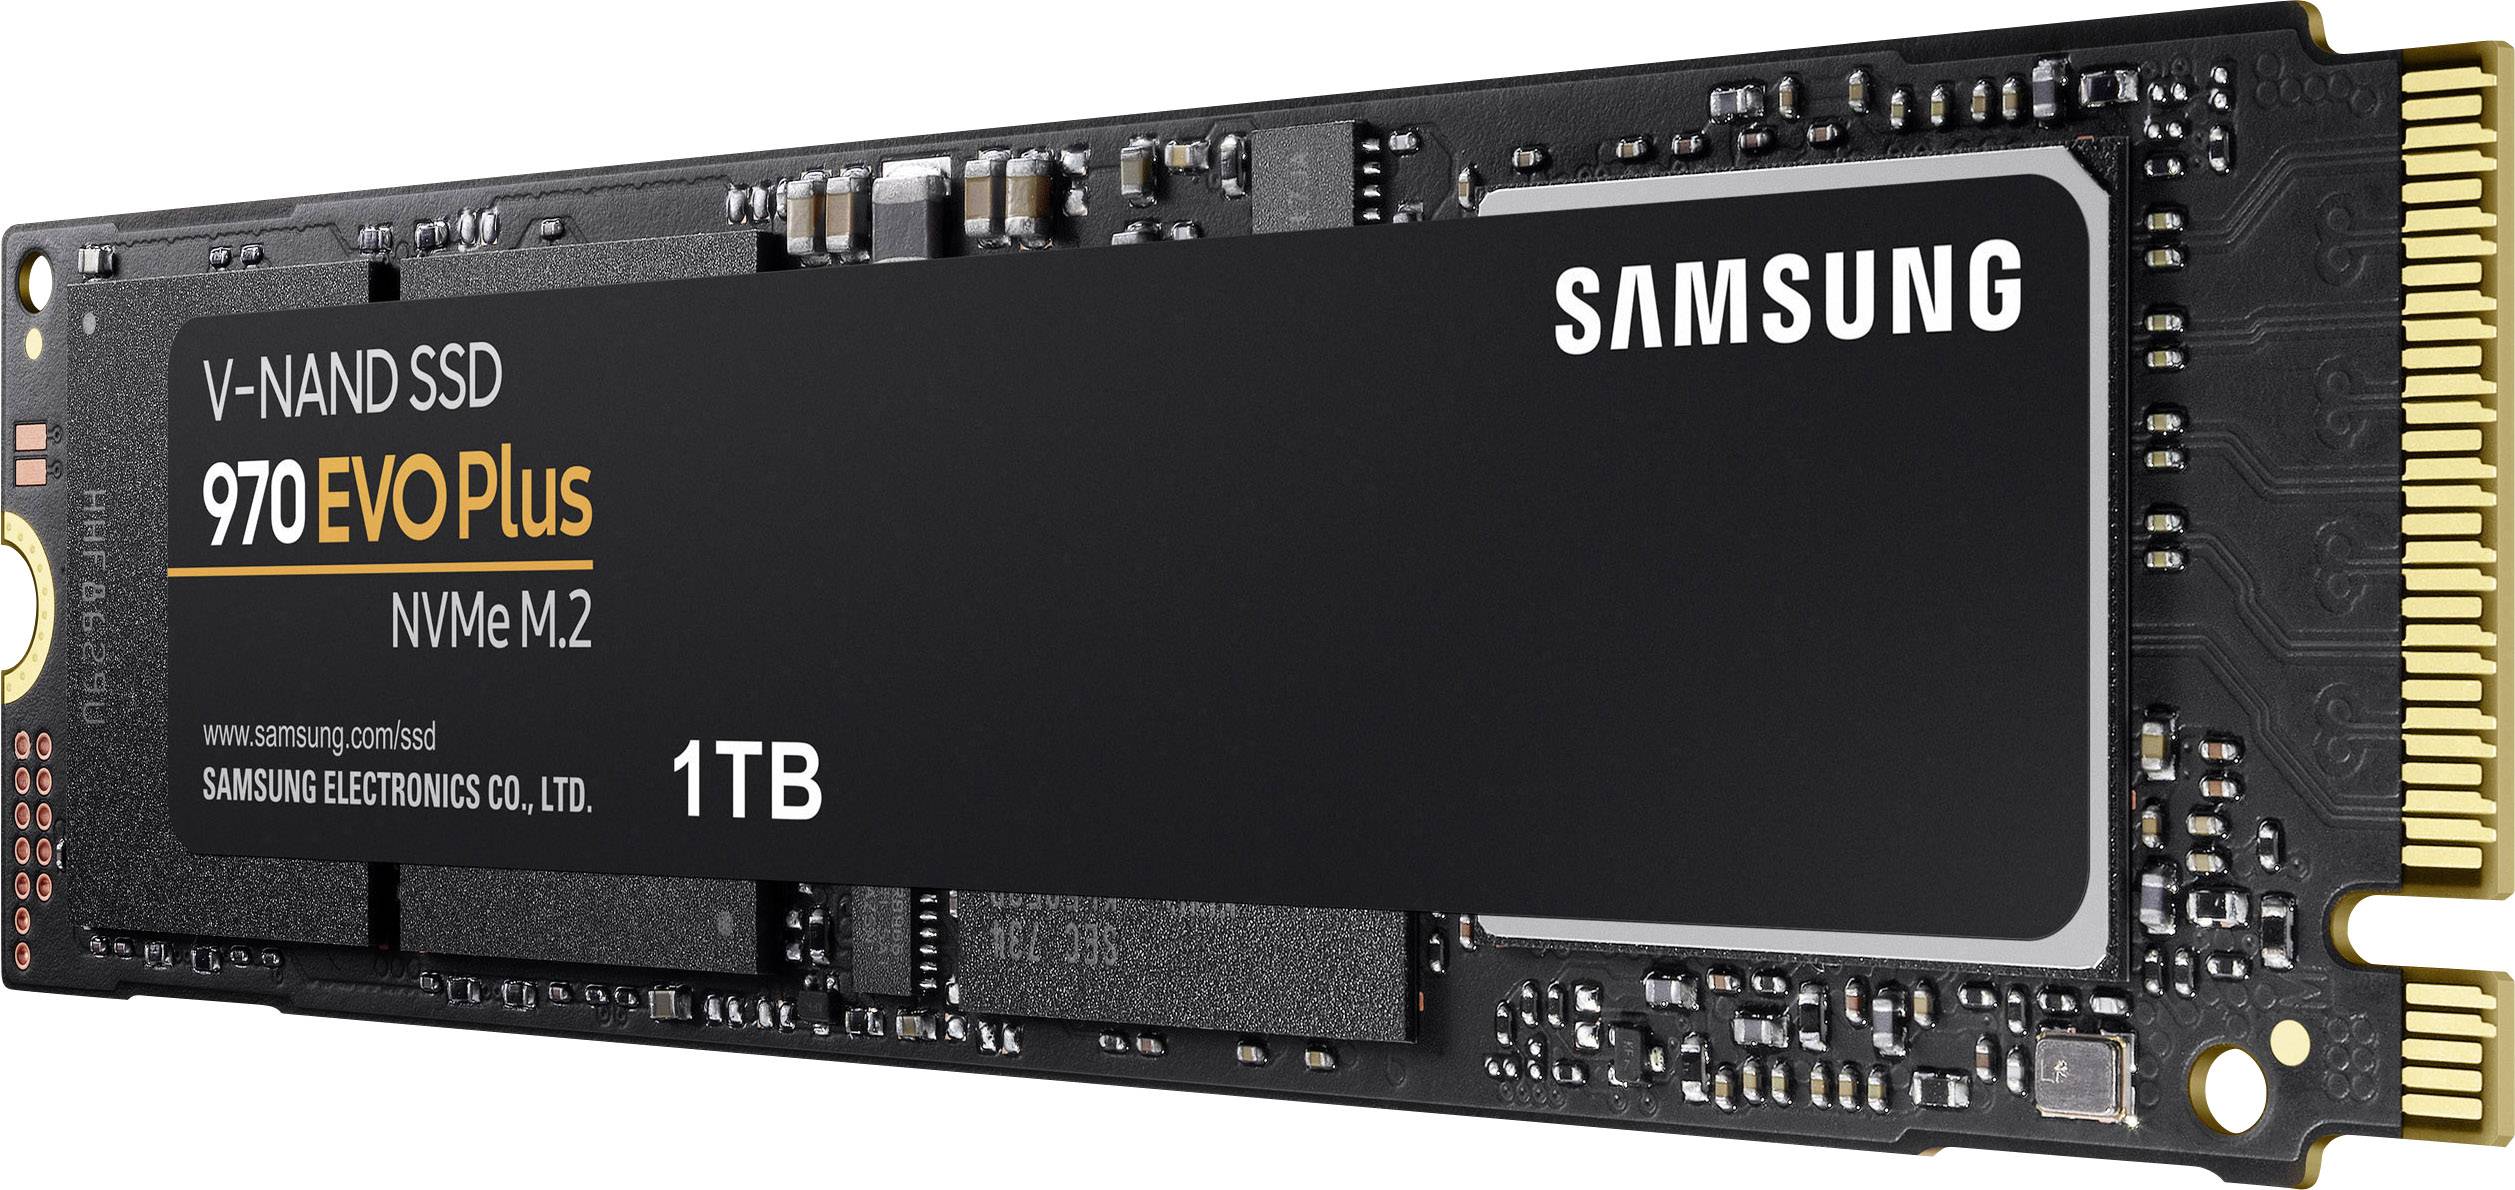 Samsung 970 EVO Plus 1 TB M.2 internal SSD NVMe PCIe 3.0 x4 Retail MZ-V7S1T0BW | Conrad.com